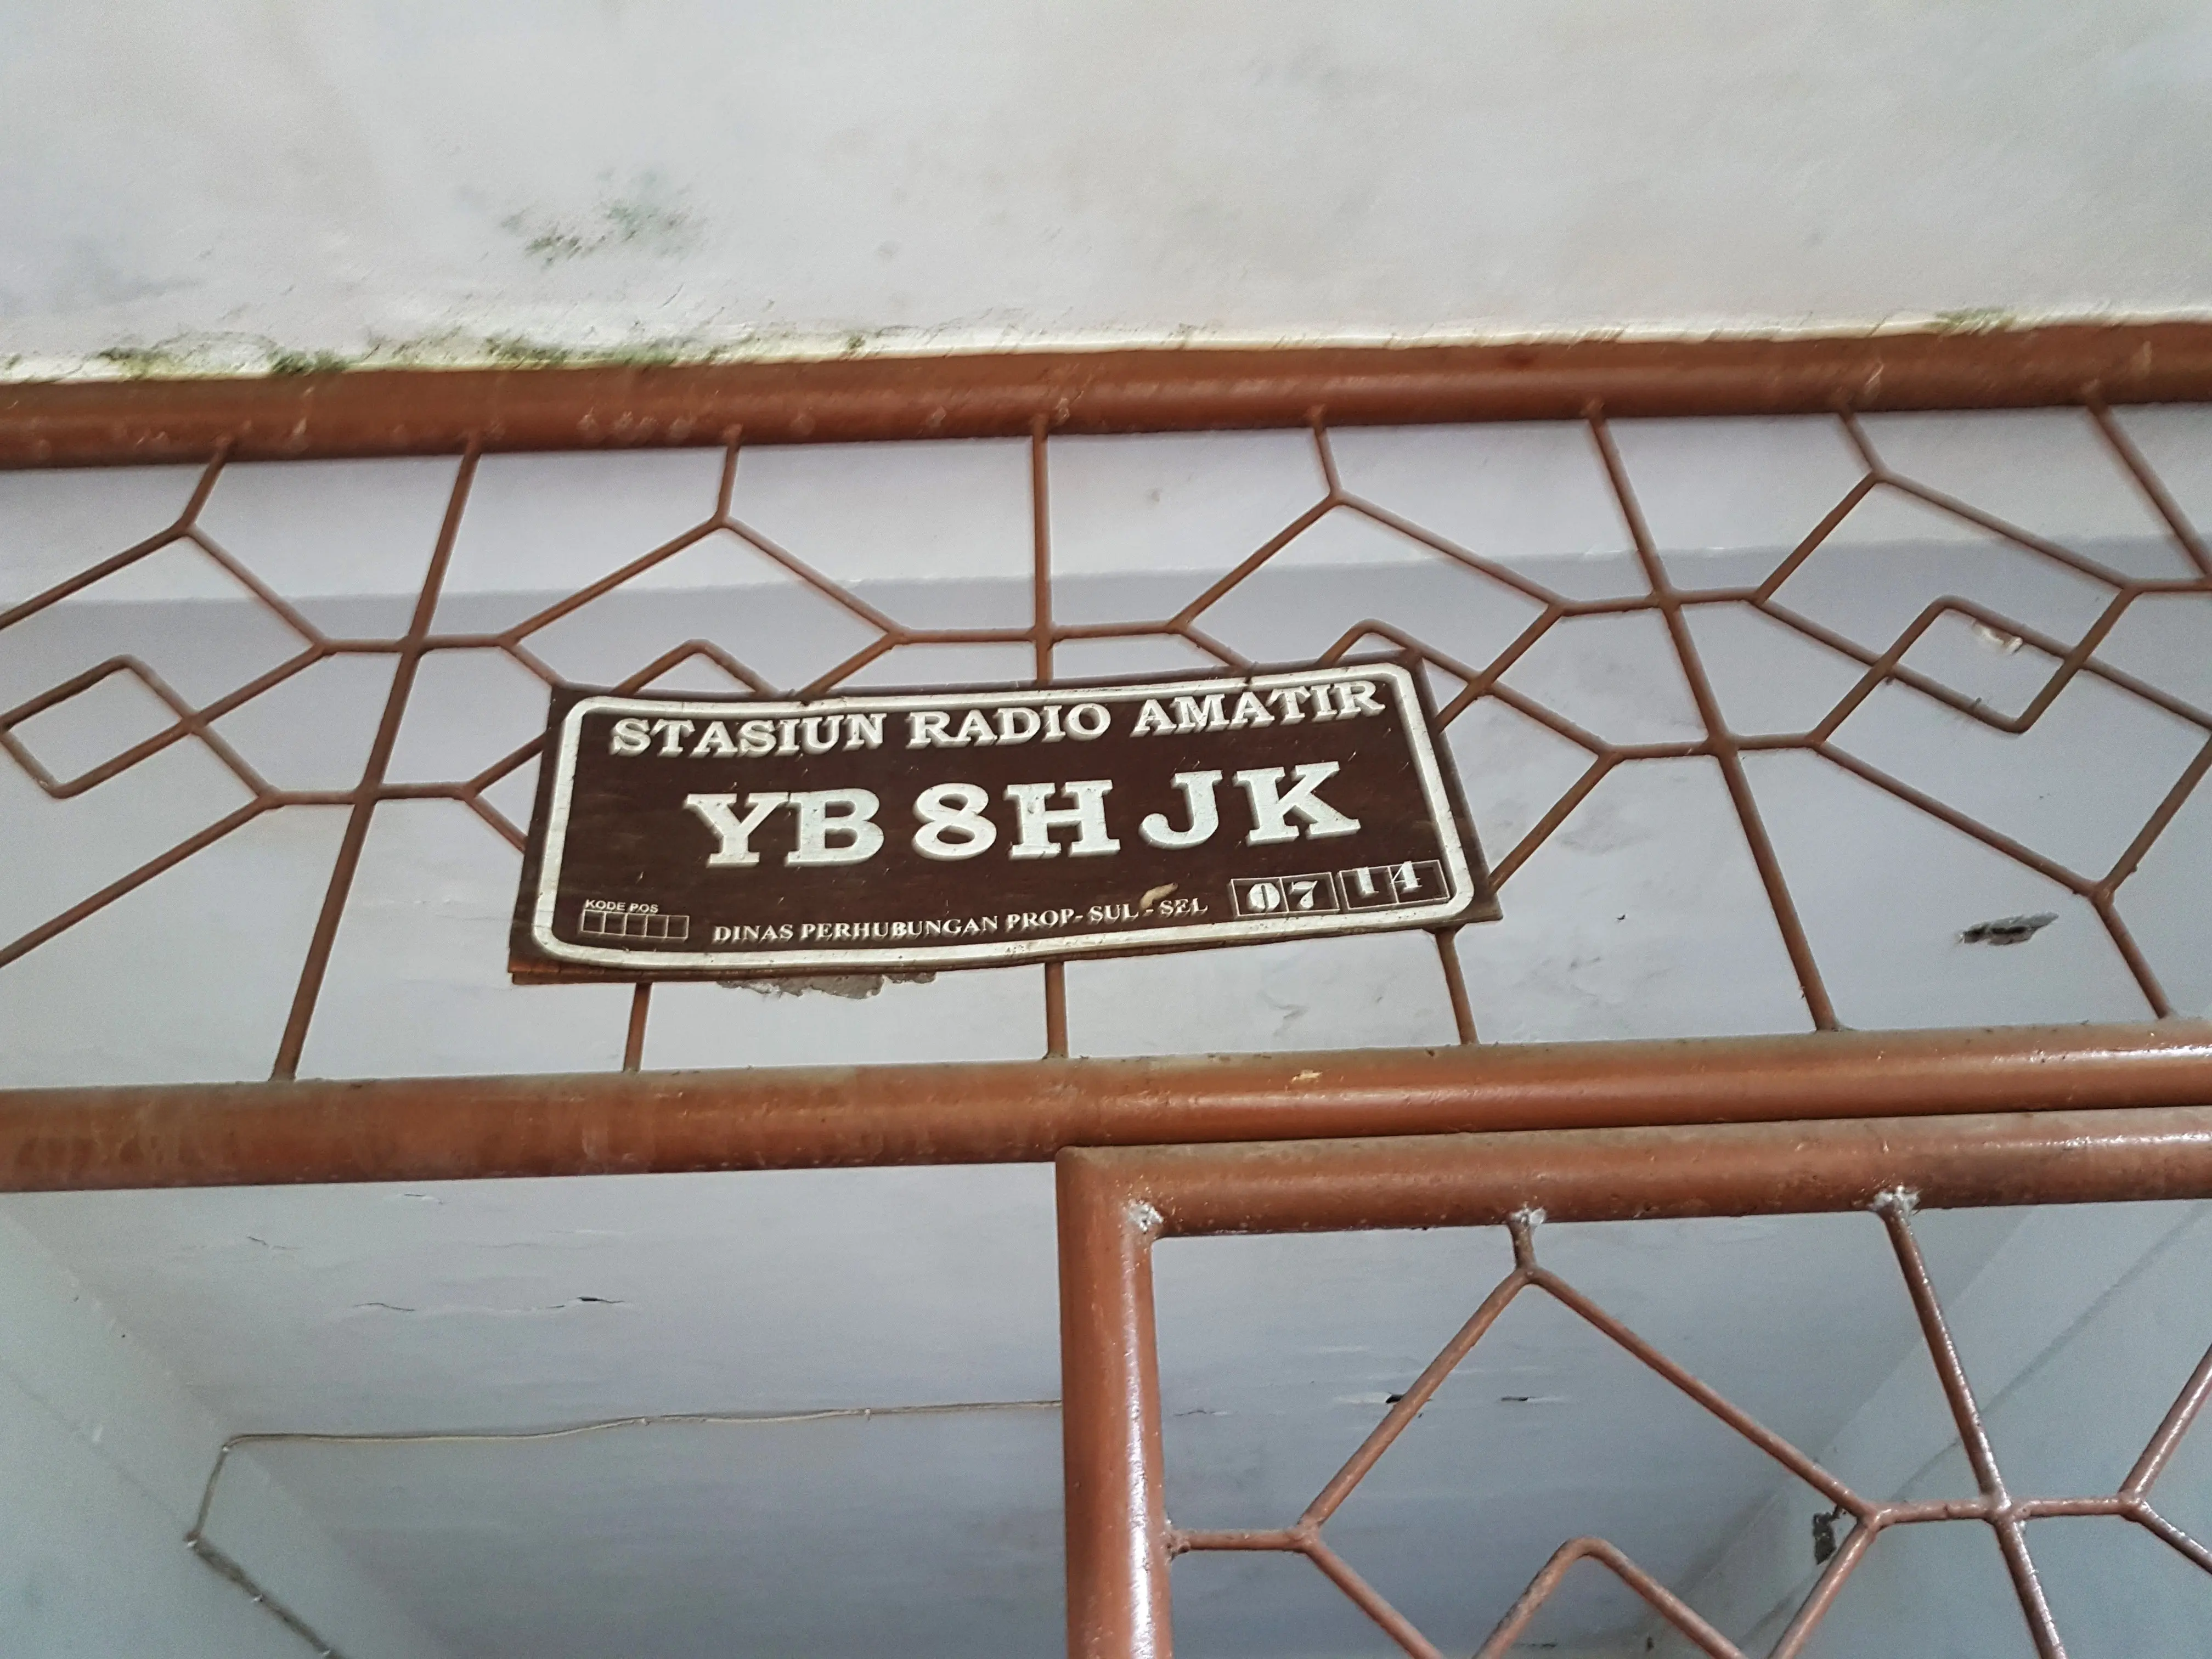 HJK itu potongan nomor Stasiun Radio Amatir (YB 8H JK) milik Syarifuddin Akbar, manajer band pelestari Koes Plus di Makassar. (Liputan6.com/Fauzan)